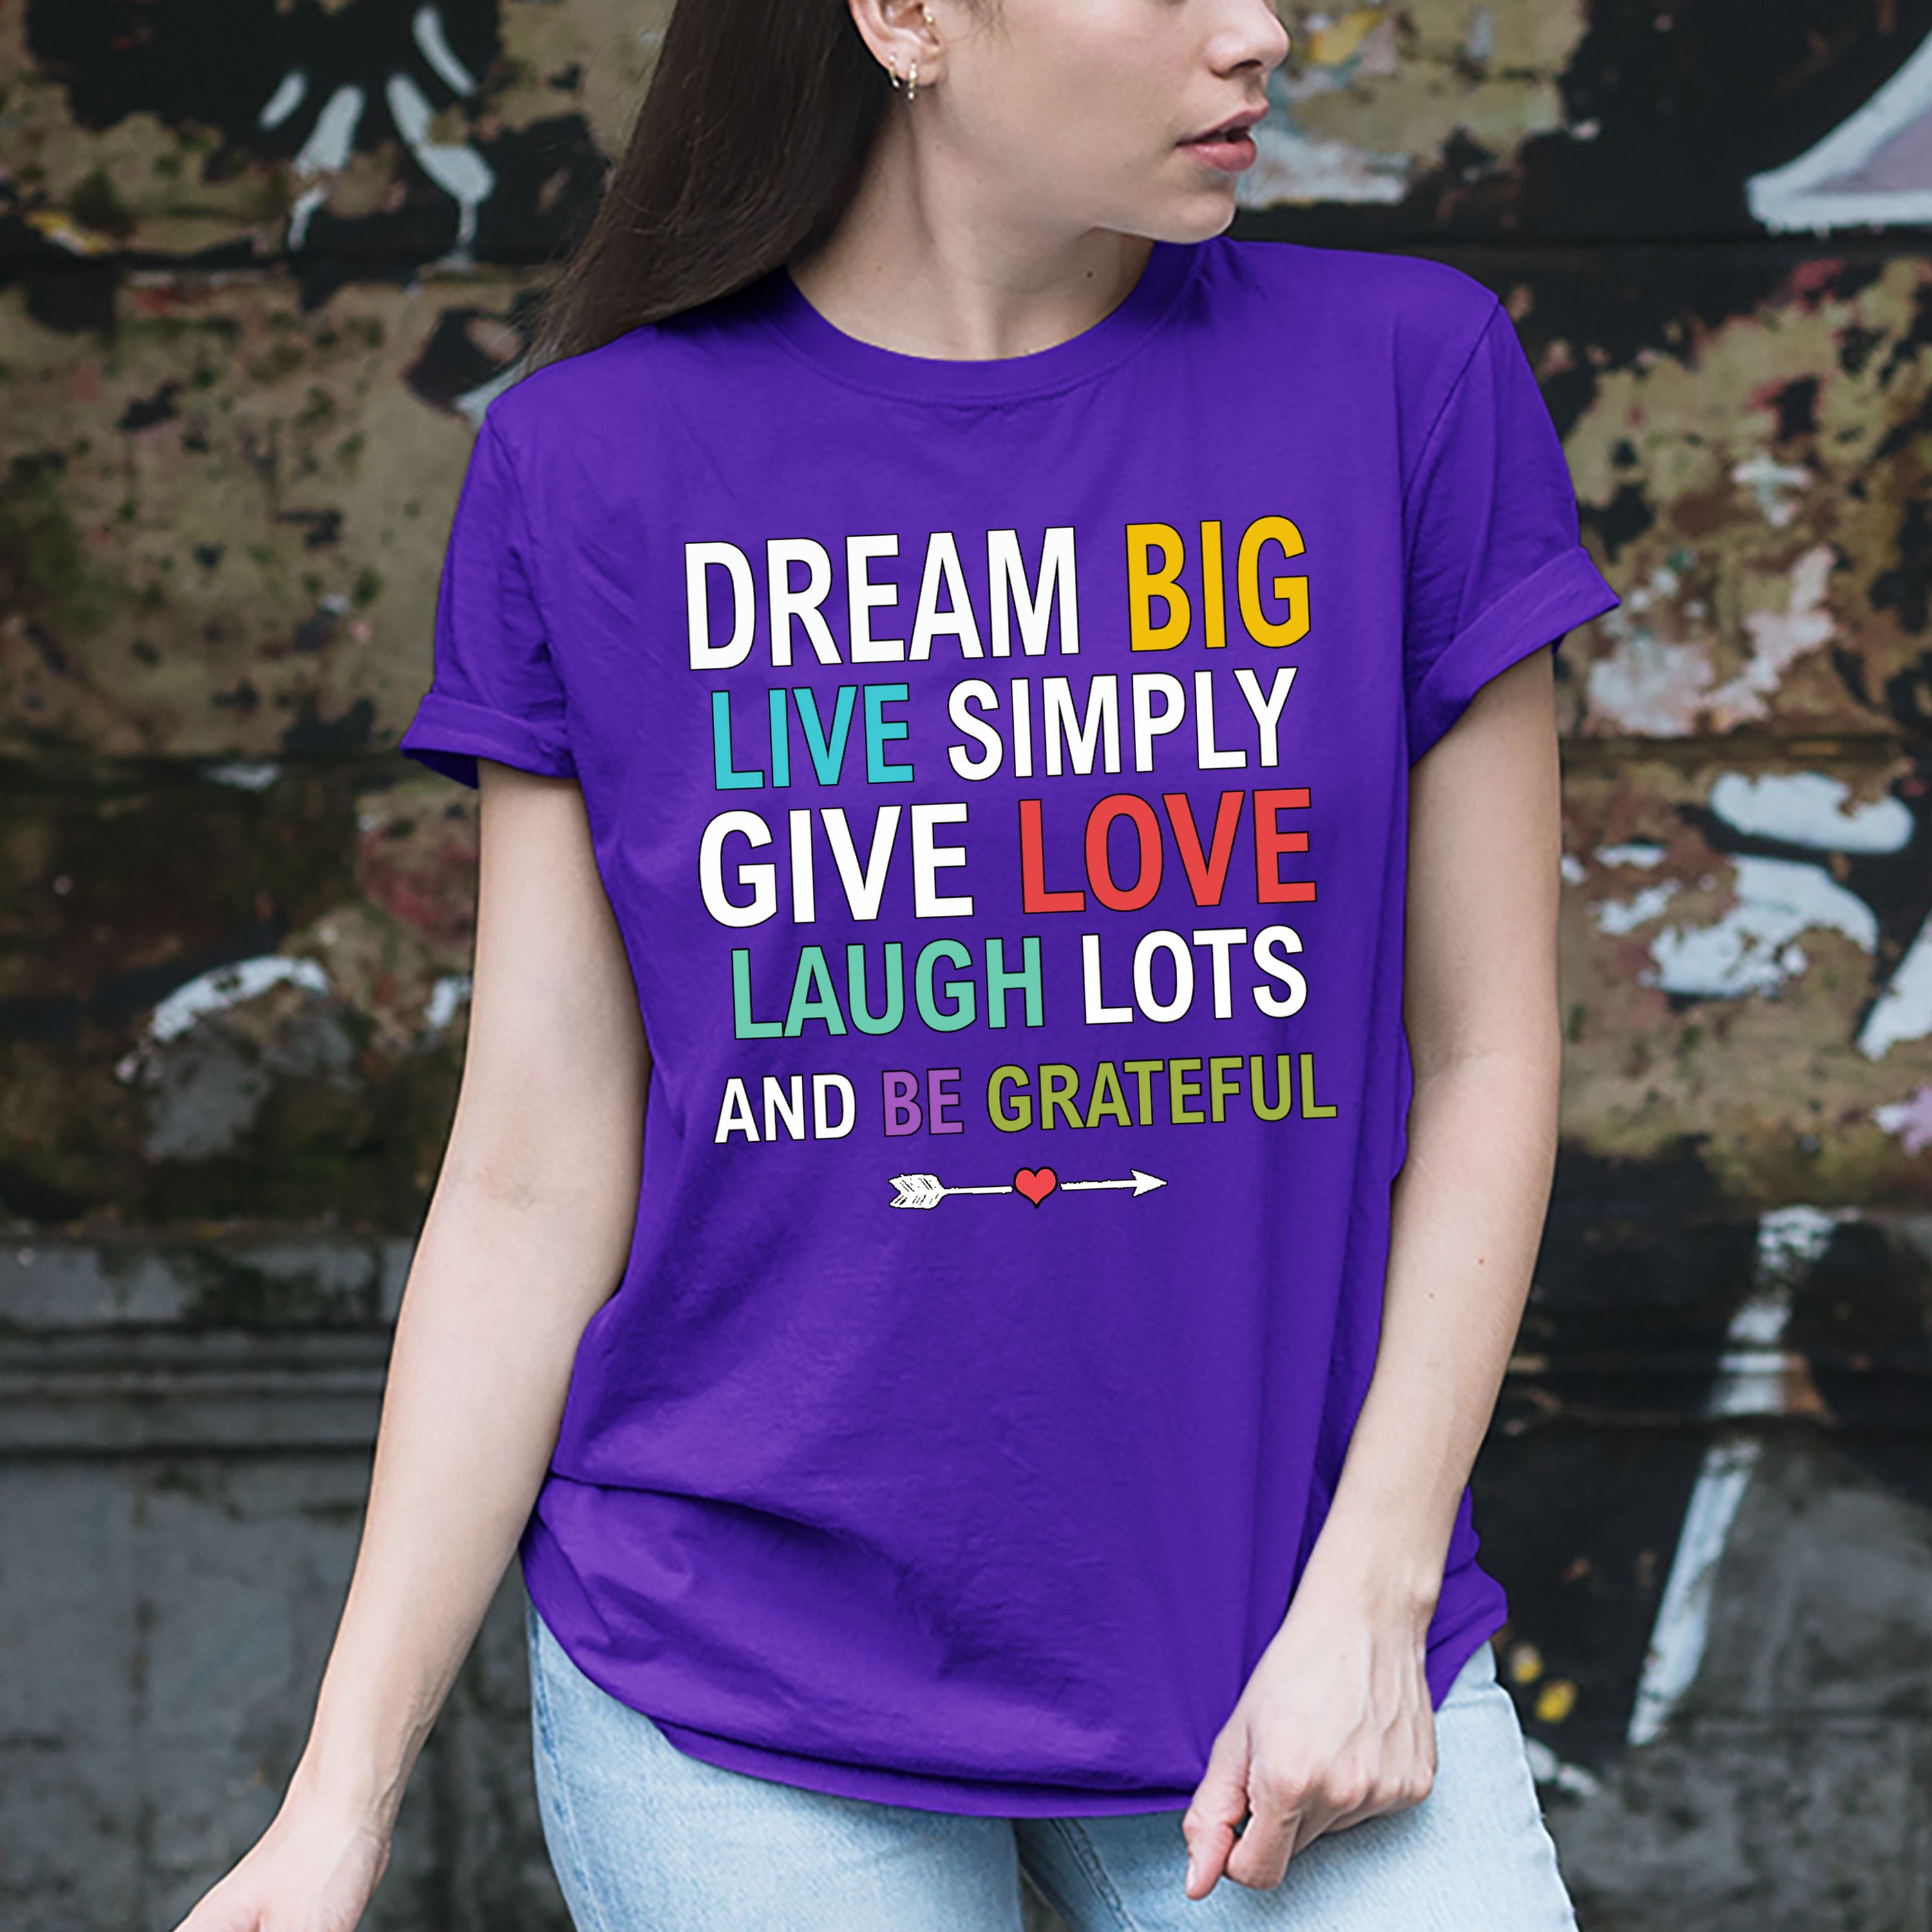 "Dream Big, Live Simply"